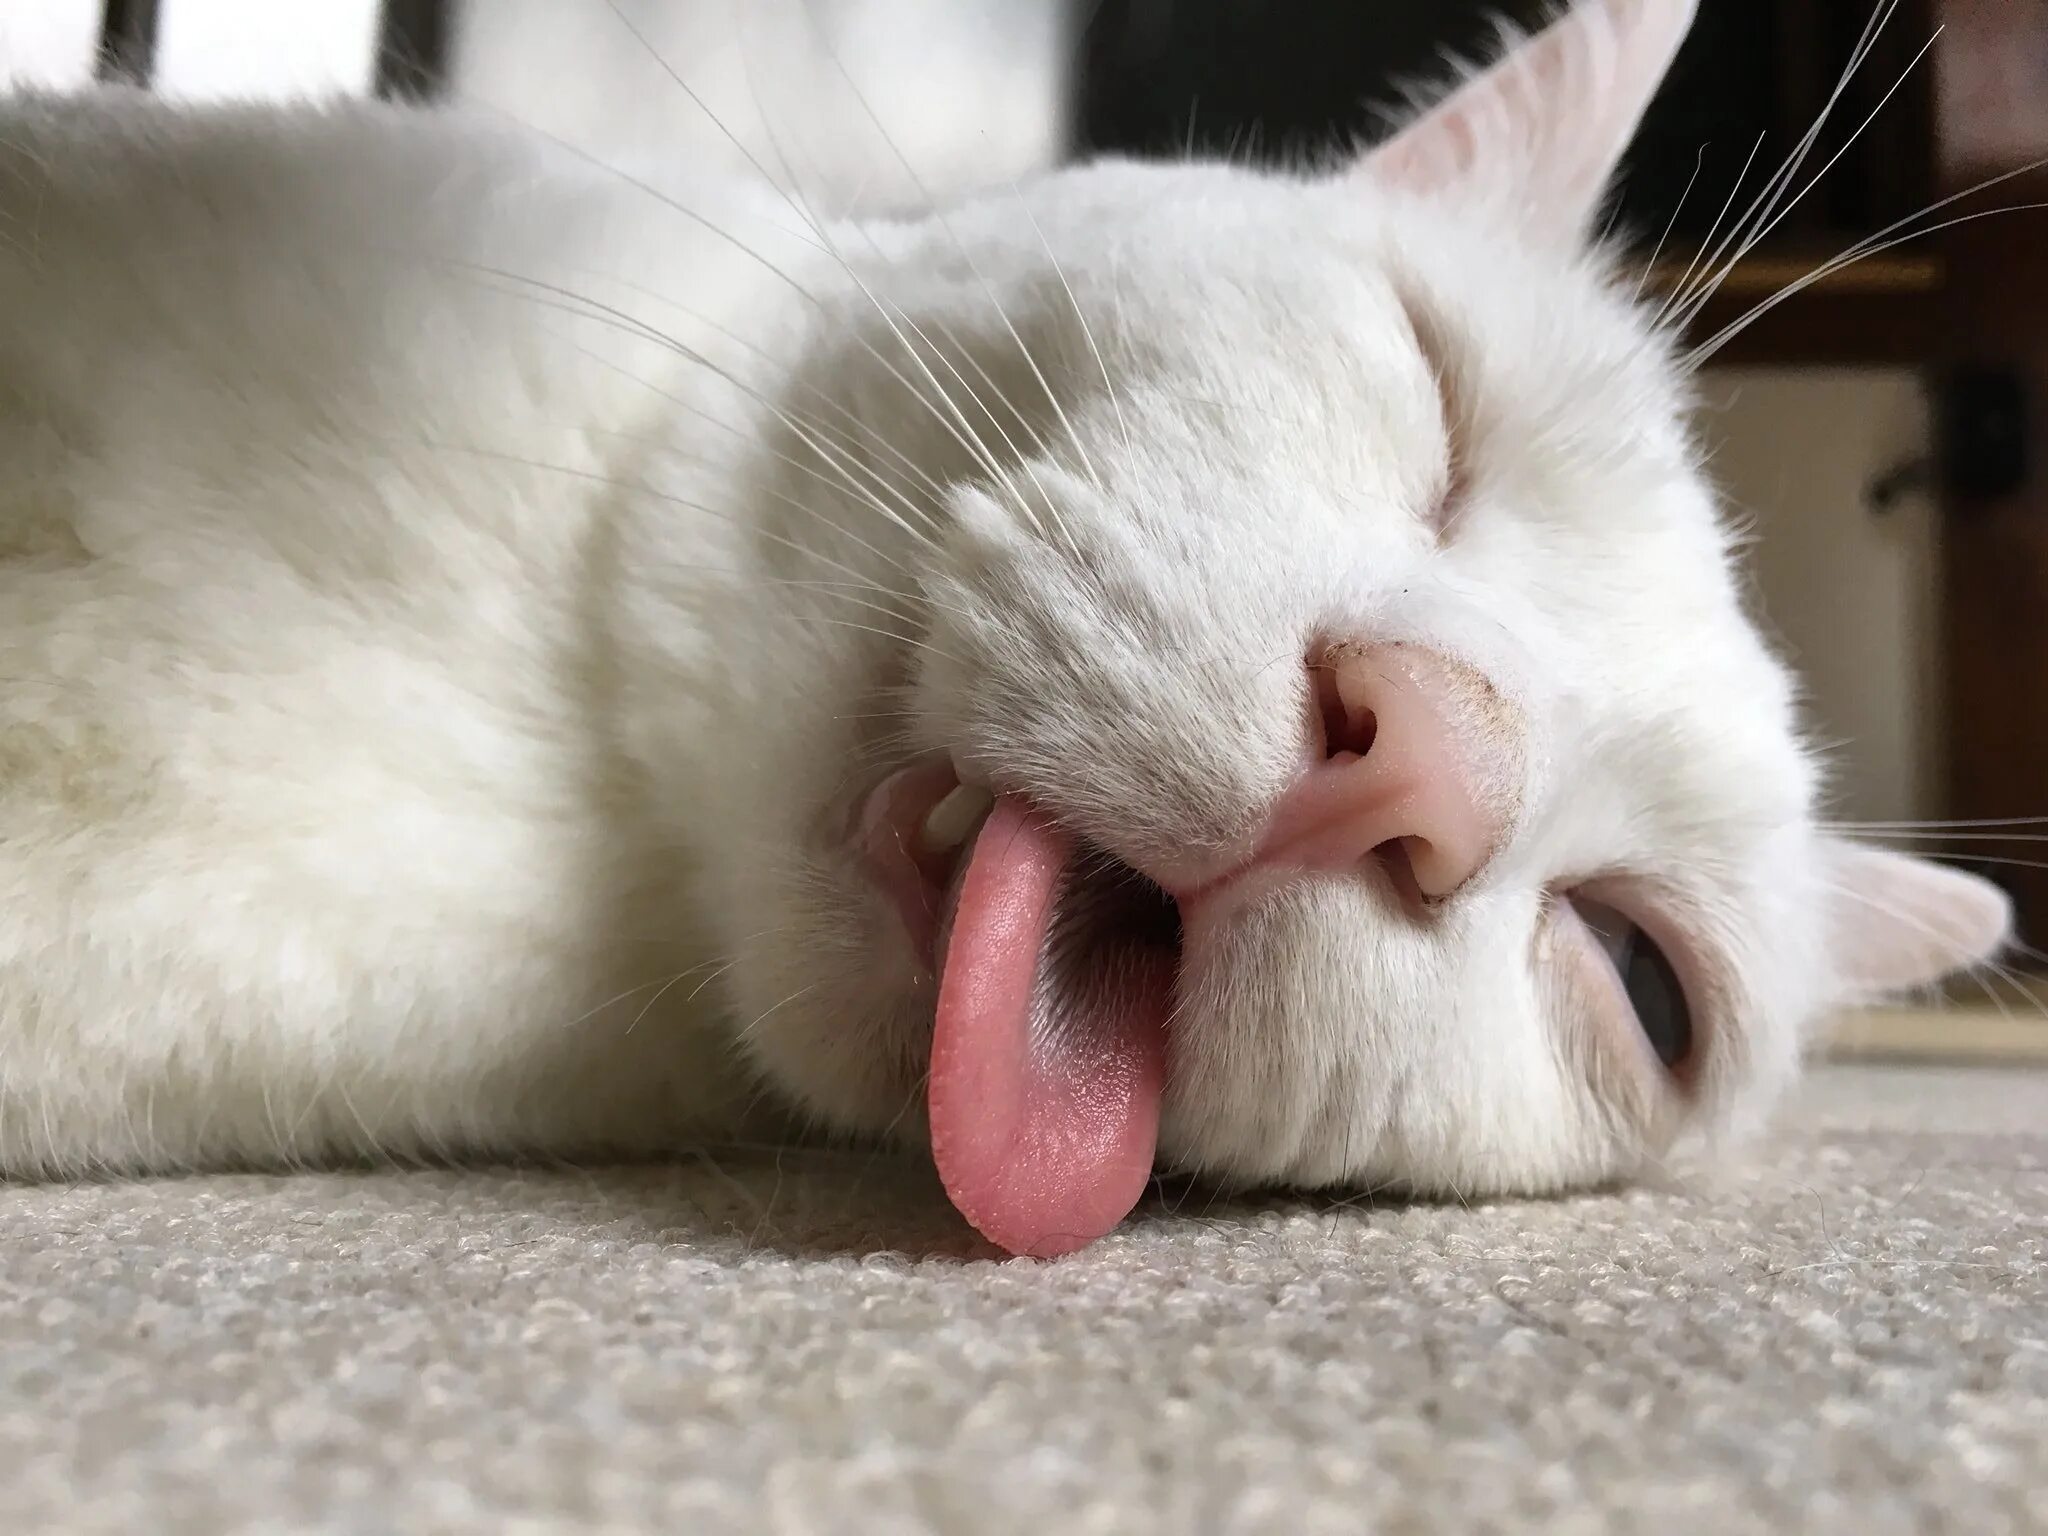 Кошка с высунутым языком. Спящий кот. Белая кошка с высунутым языком. Спящий кот с высунутым языком.